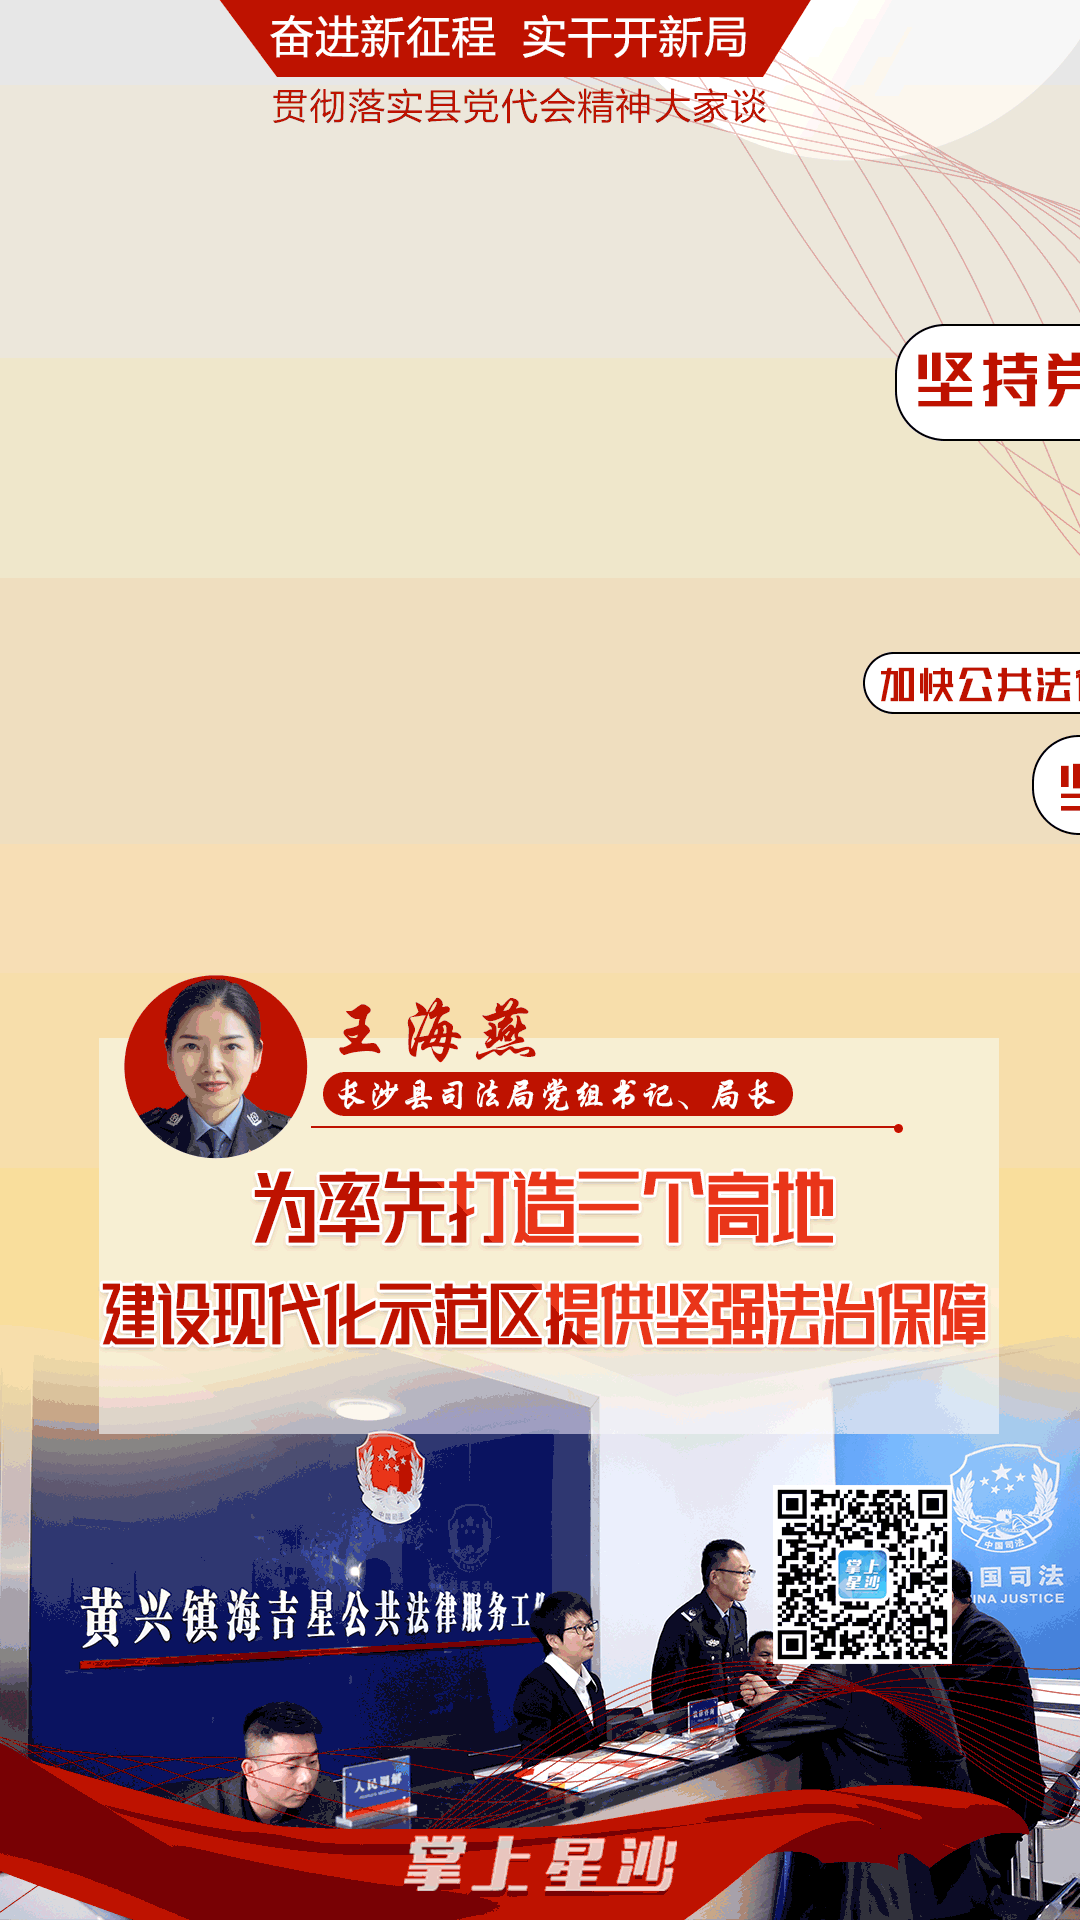 长沙县执法局王海燕图片